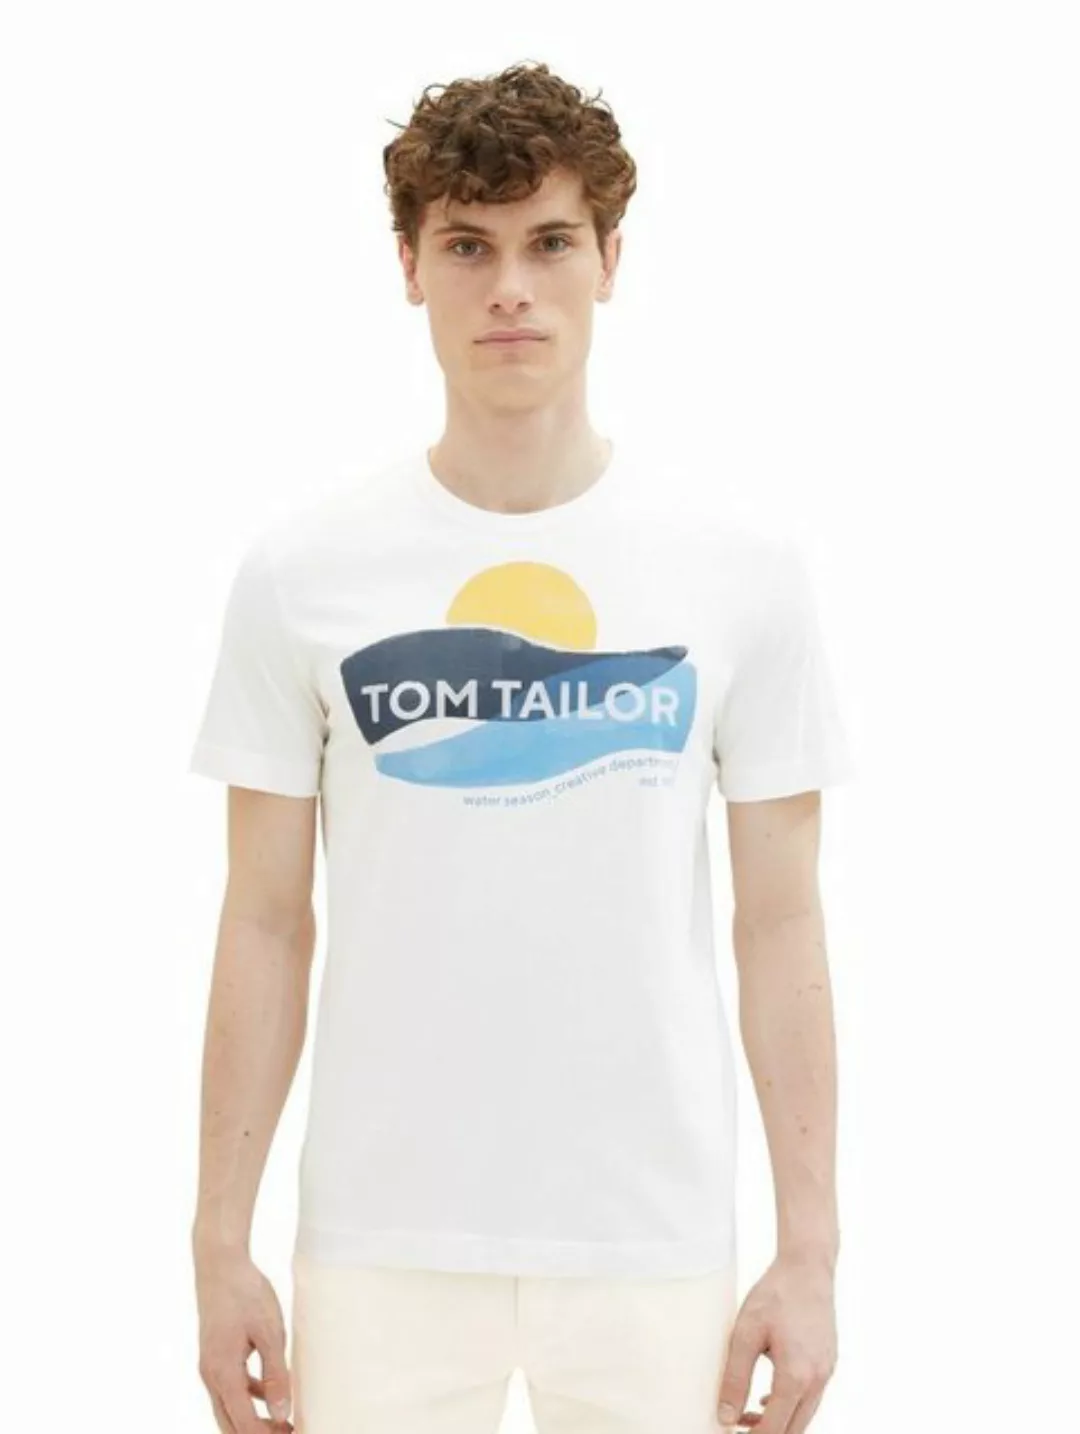 Tom Tailor Herren T-Shirt WATER SEASON - Regular Fit günstig online kaufen